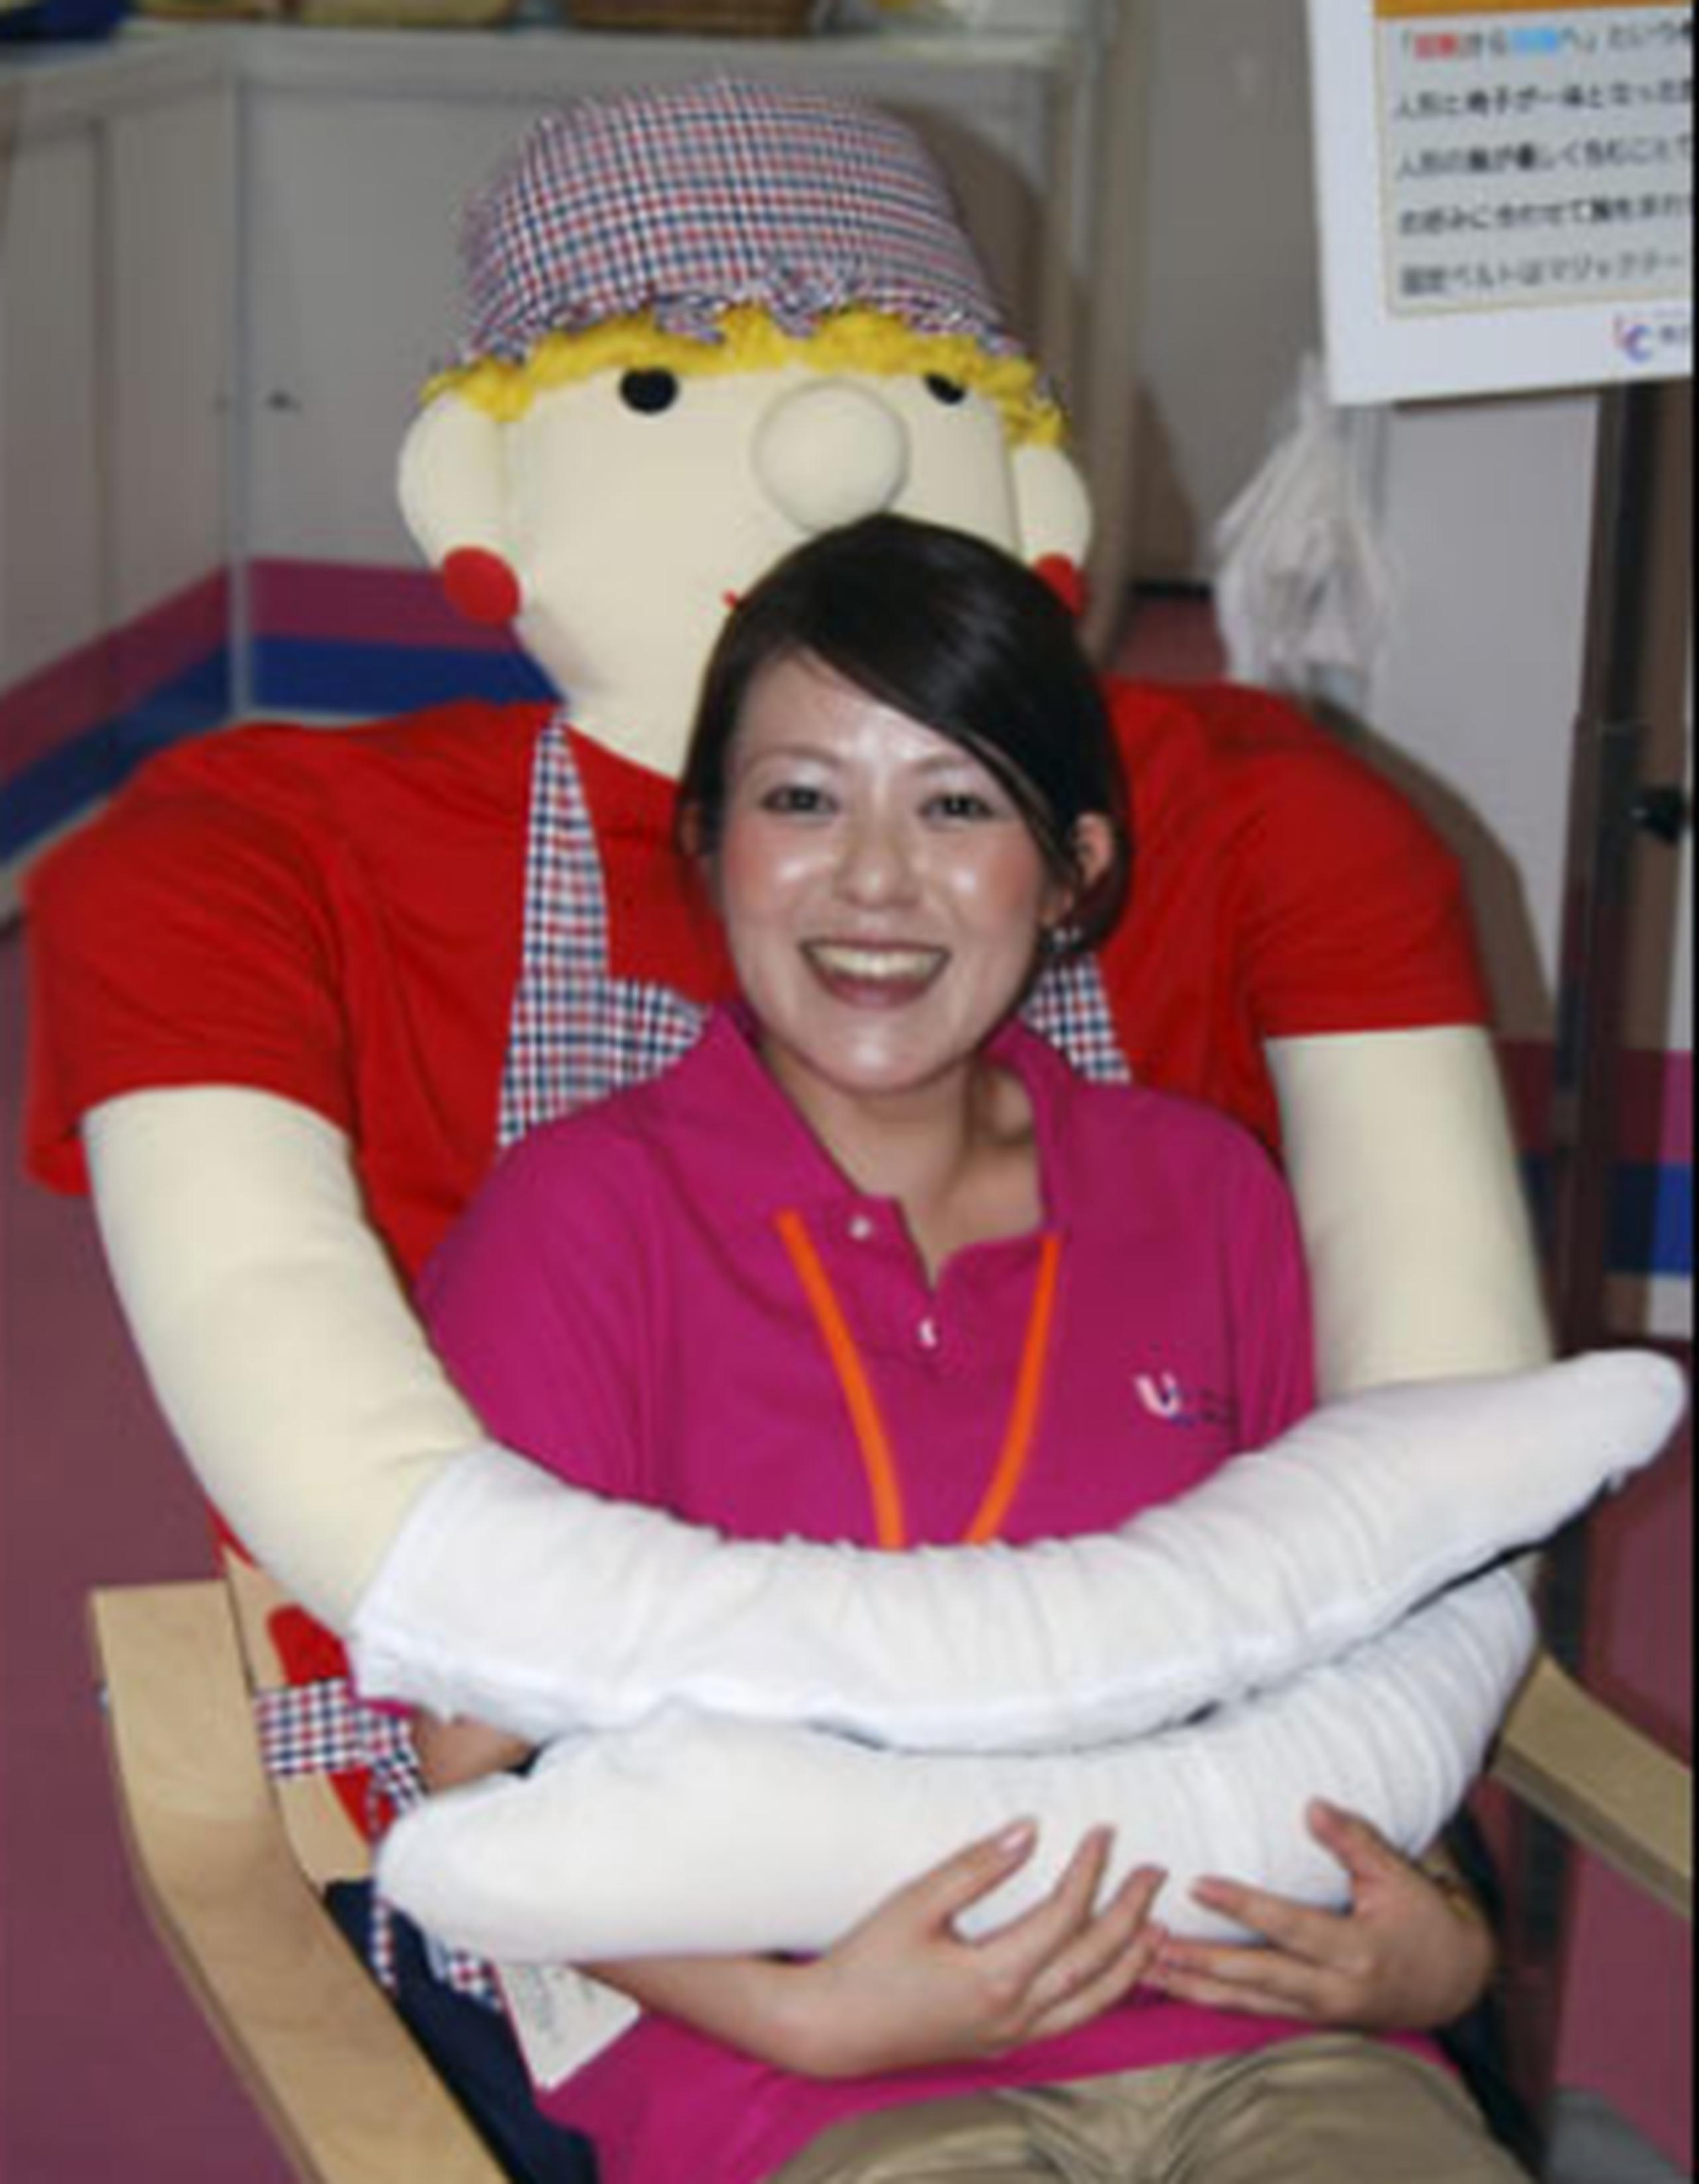 El asiento es especialmente diseñado para "dar abrazos", obra de la compañía japonesa UniCare. (EFE)